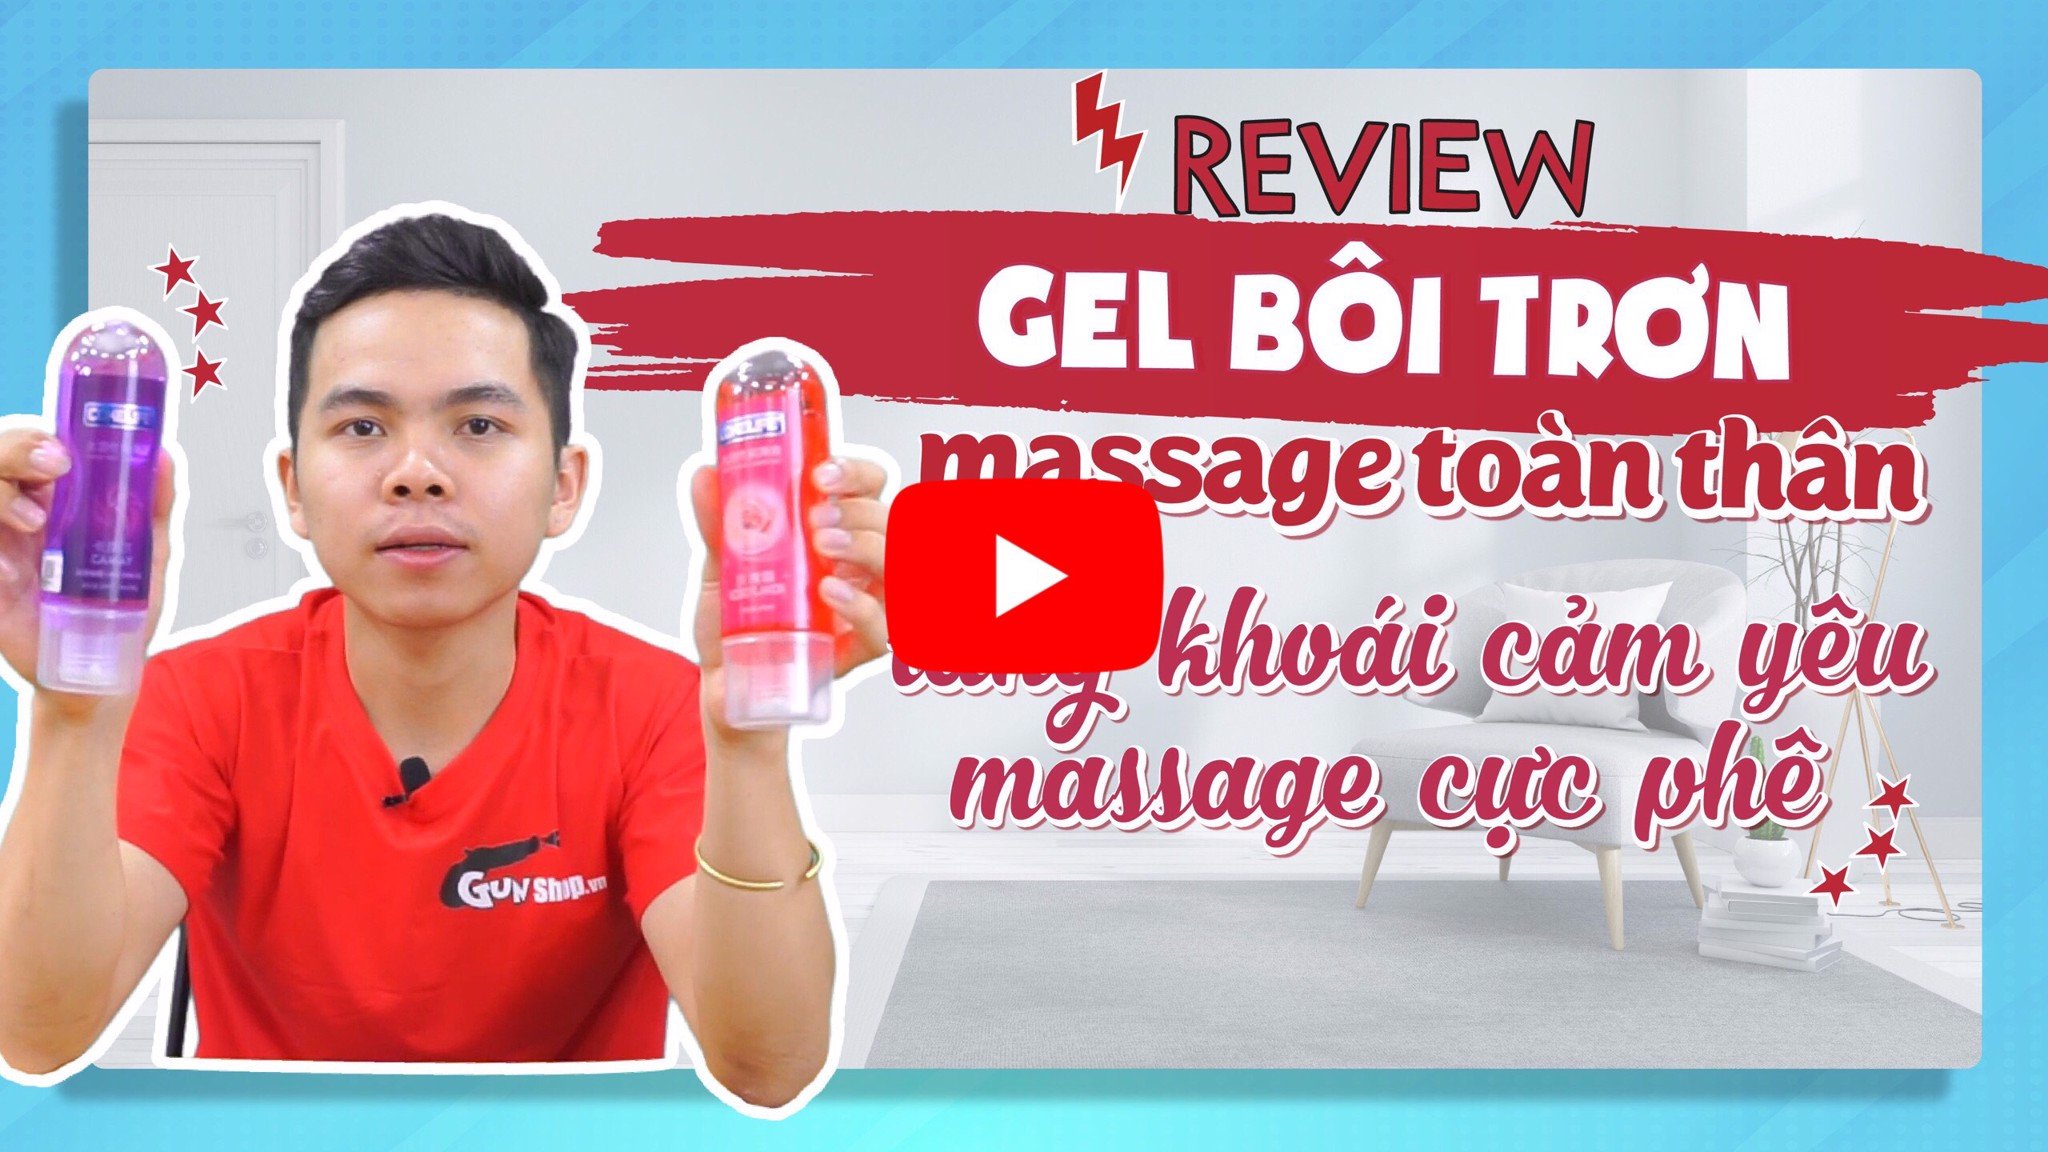 [REVIEW] Gel Bôi Trơn Massage Toàn Thân Mang Lại Cảm Giác Mới Lạ | G - Channel